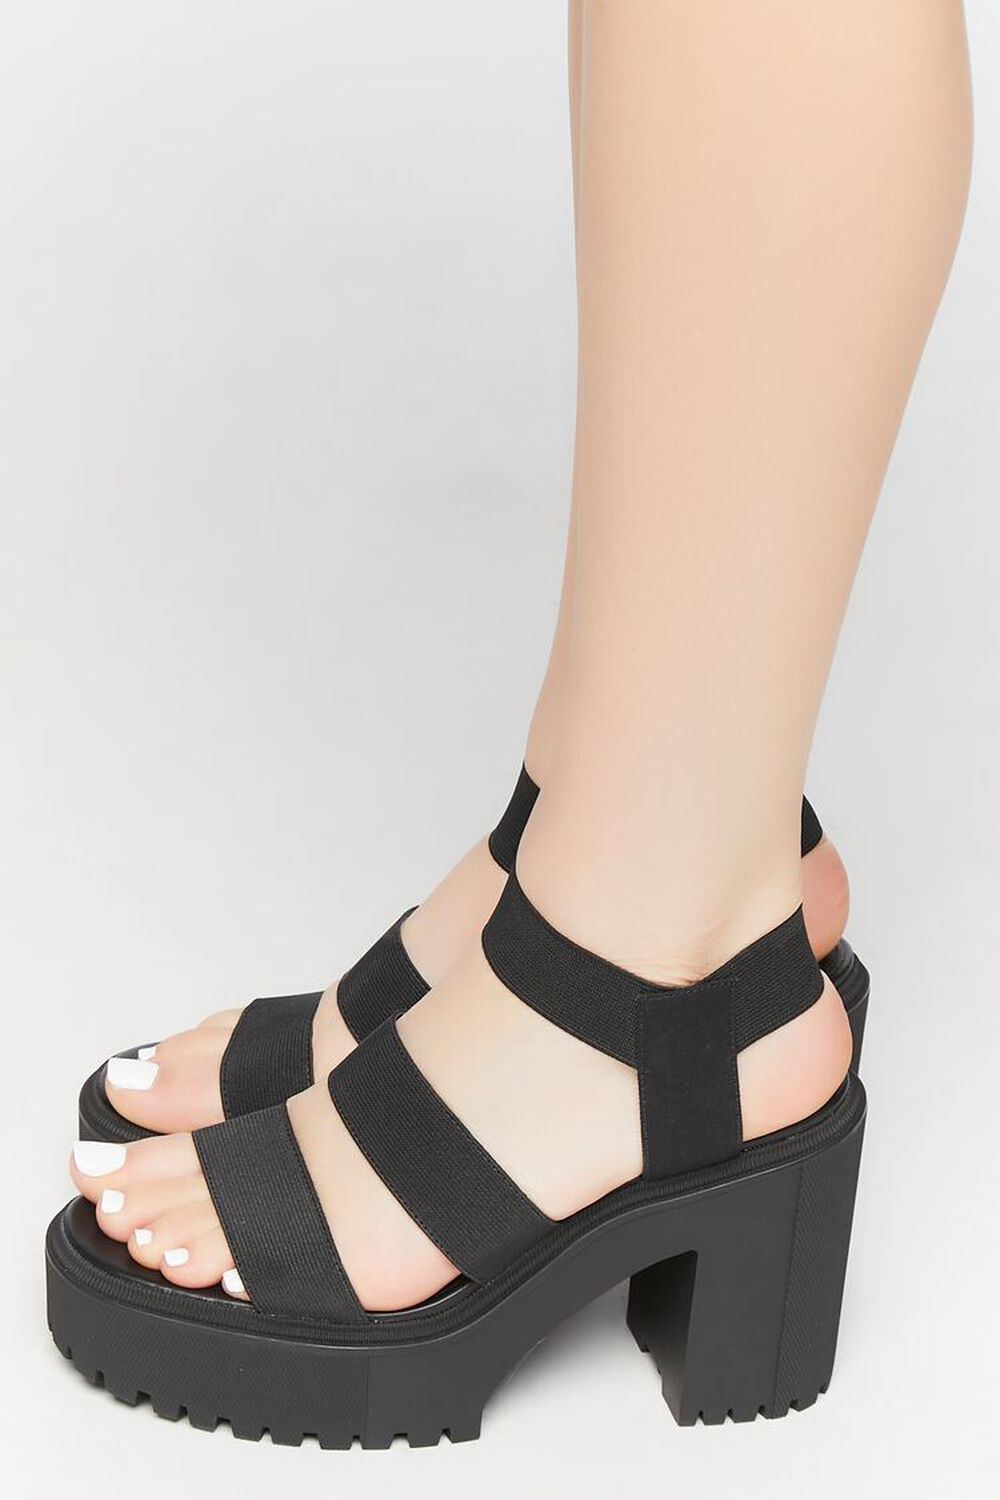 BLACK Strappy Platform Lug Sandals, image 2